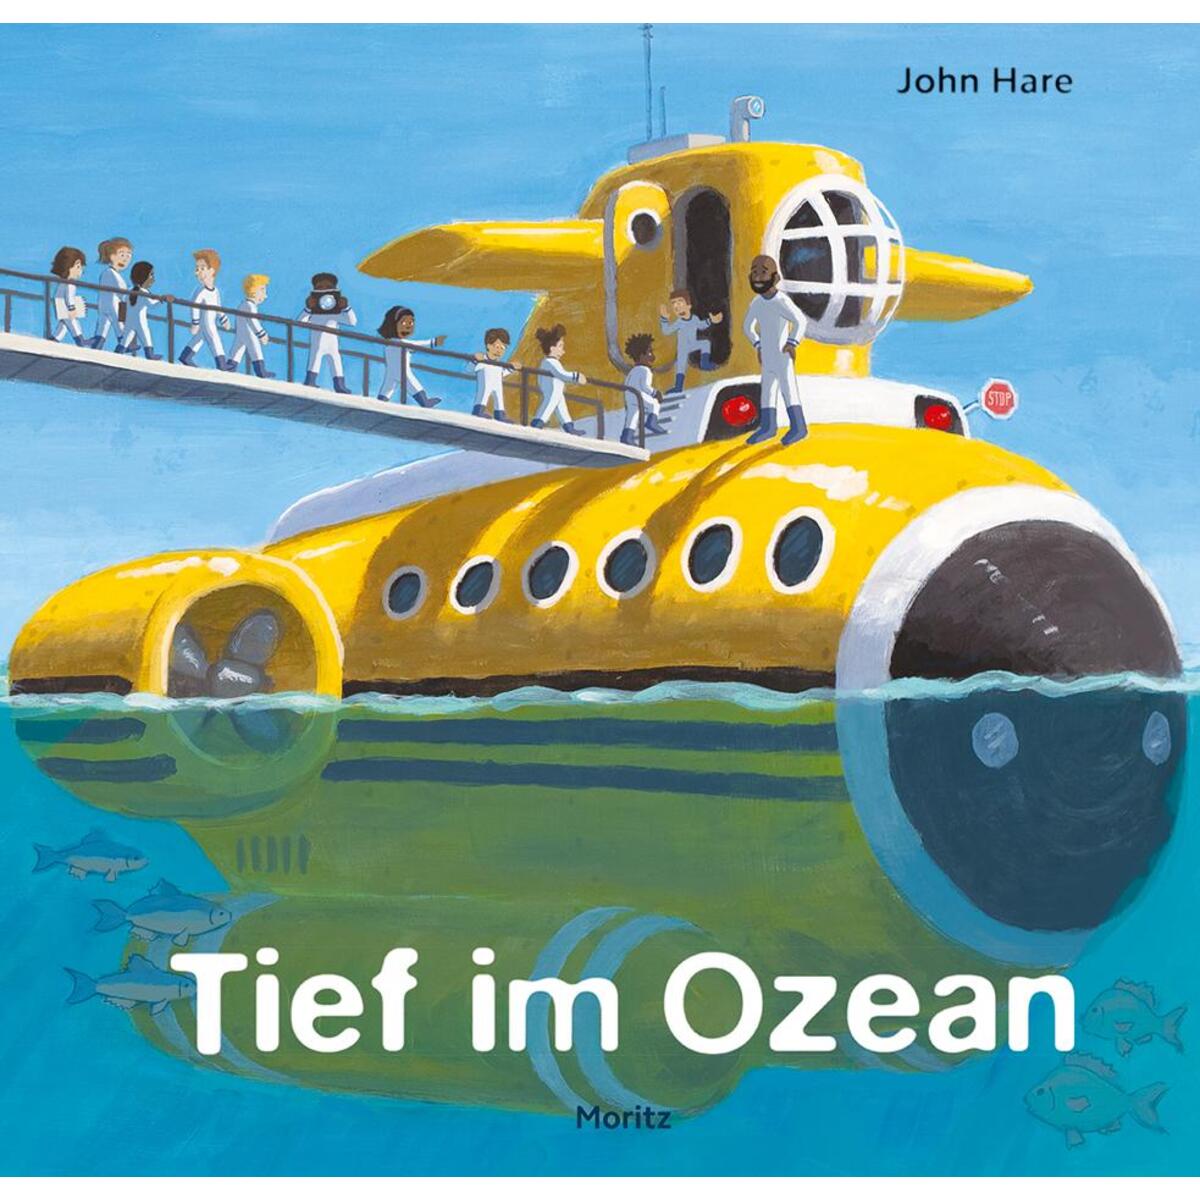 Tief im Ozean von Moritz Verlag-GmbH